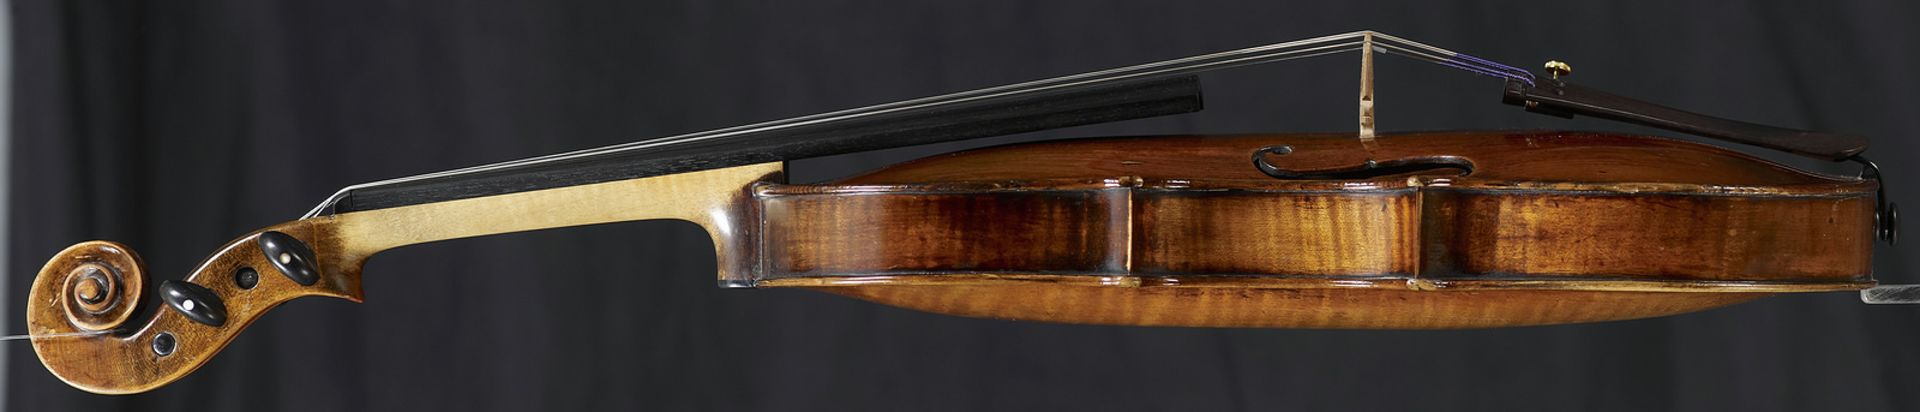 Violine, Michael Platner, Rom um 1720-1750 - Bild 2 aus 7